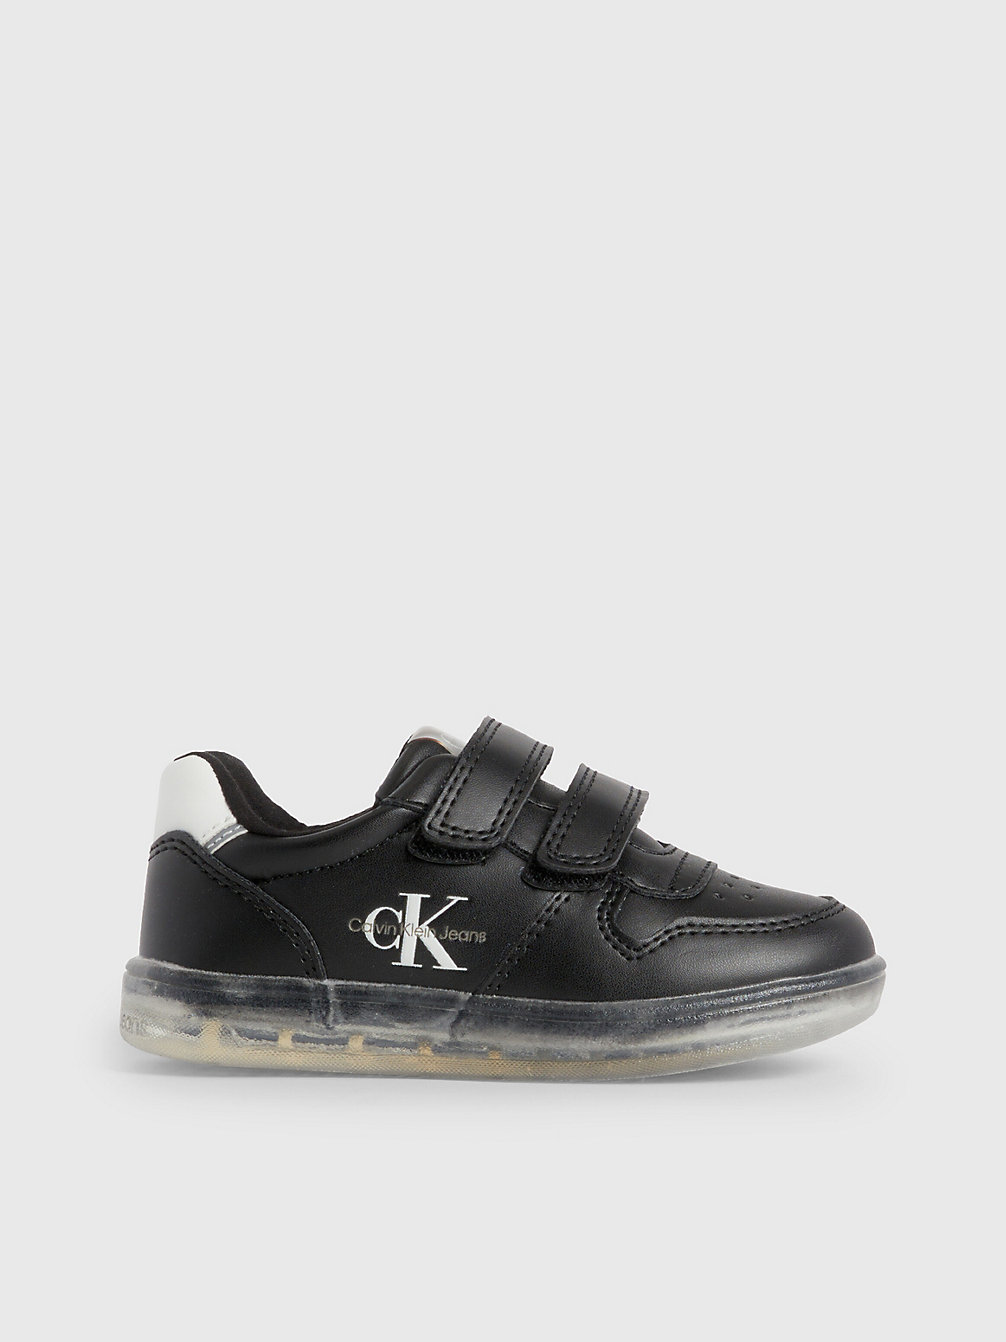 BLACK Sneakers Mit Klettverschluss Für Kleinkinder Und Kinder undefined kids unisex Calvin Klein